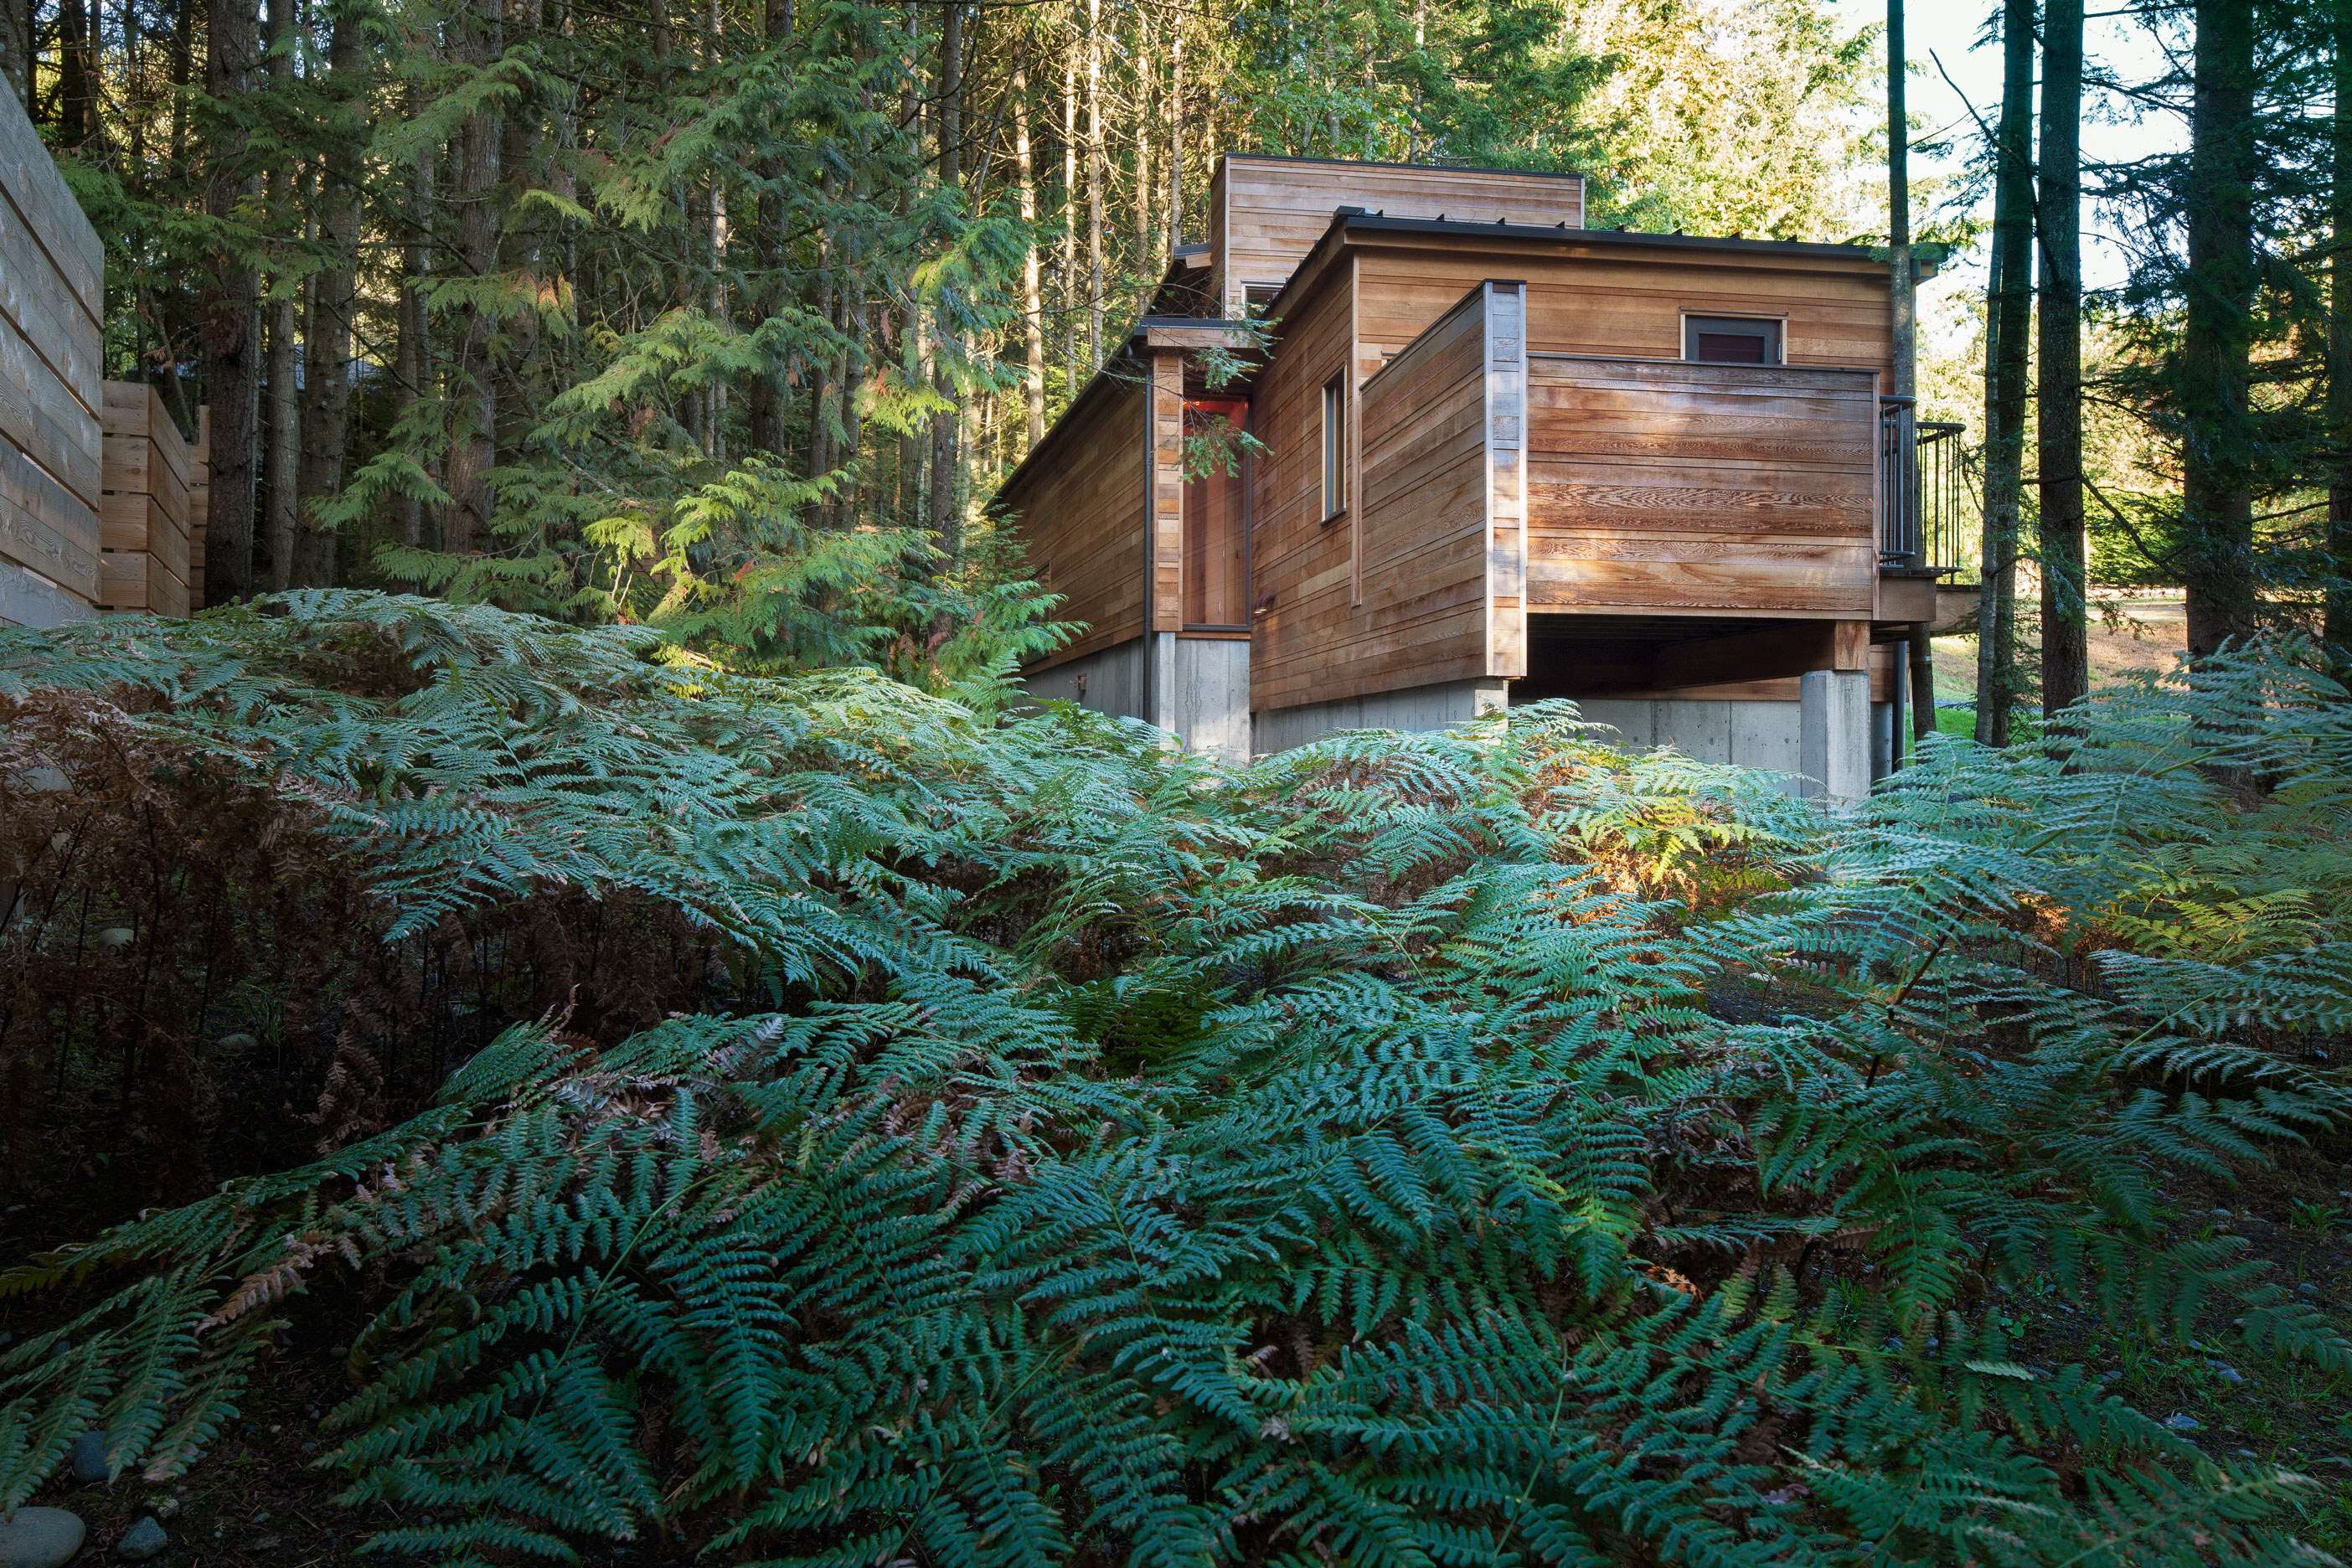 Rainforest Retreat | Small Dwelling by AGATHOM Co.